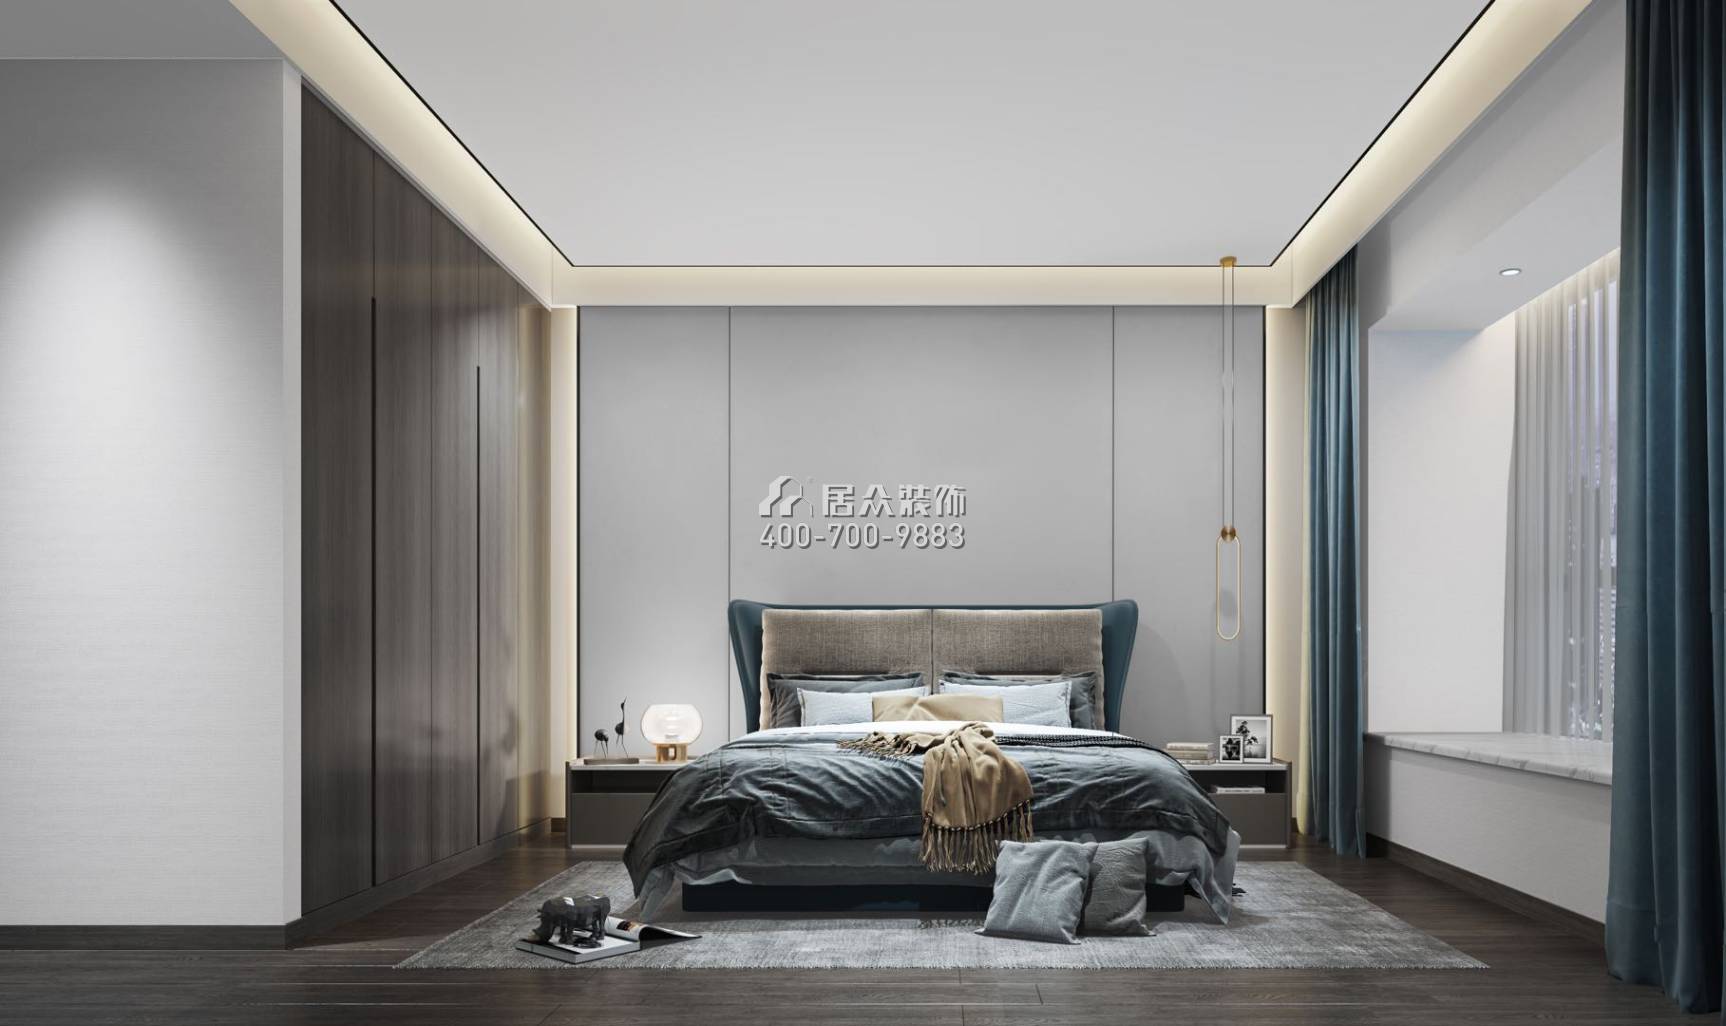 华发世纪城136平方米现代简约风格跃式户型卧室装修效果图